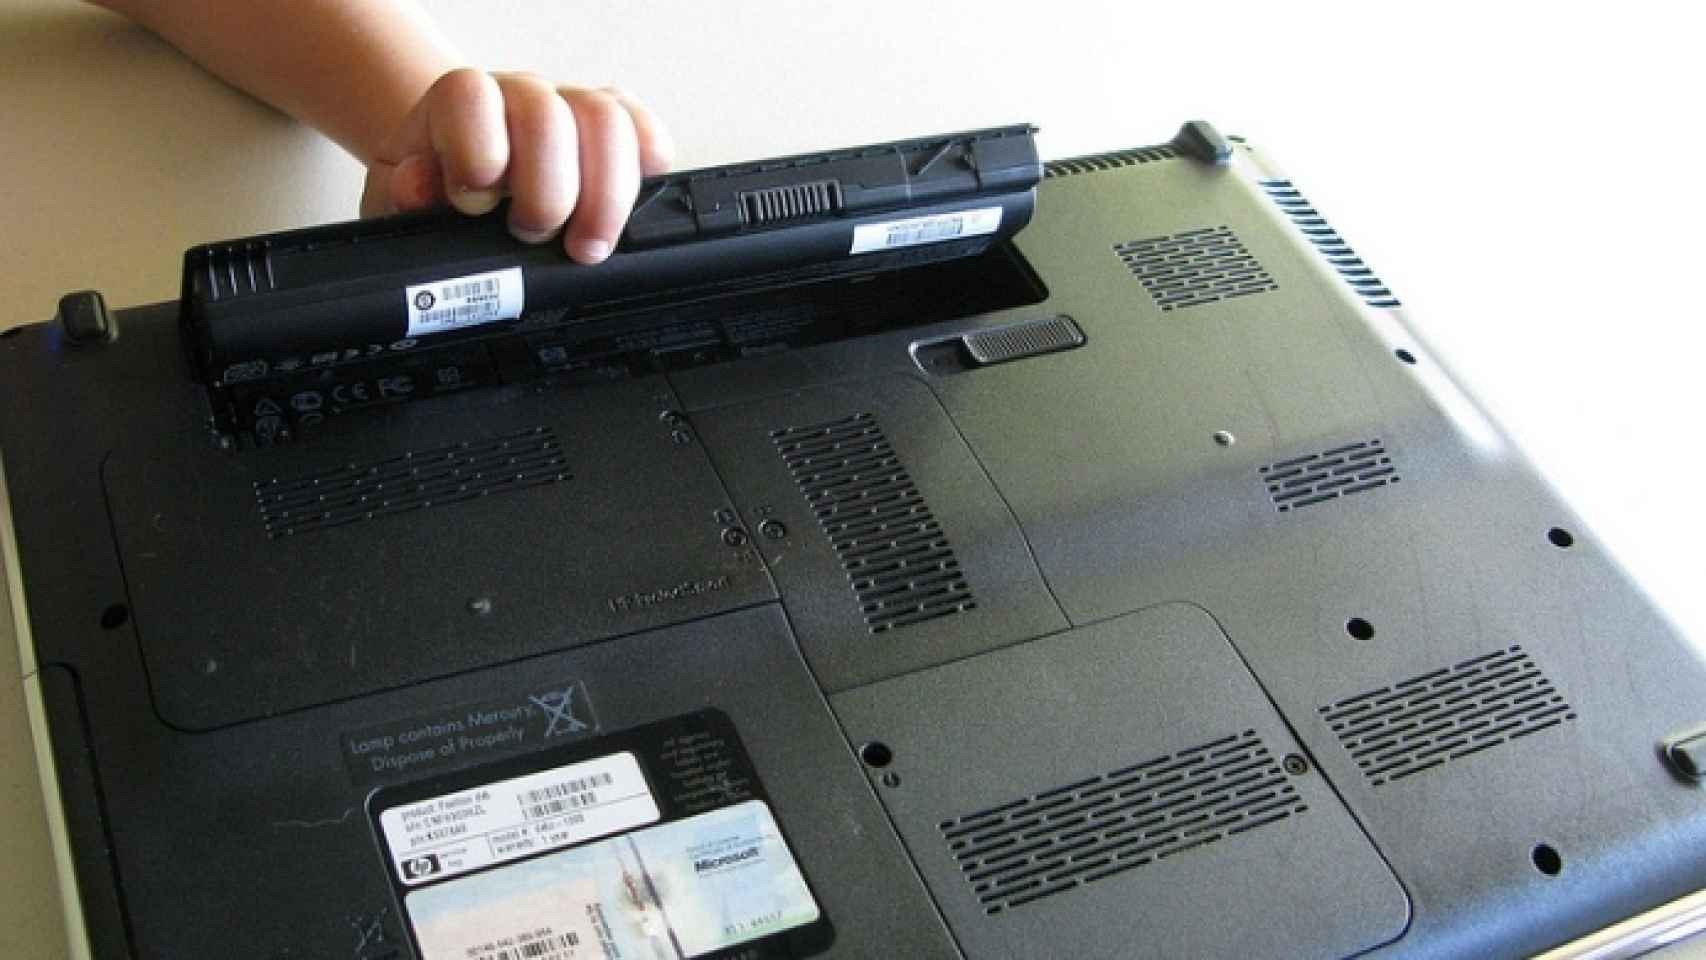 Algunos usuarios eligen remover la batería de sus laptops para evitar que esta se vea afectada. Algunos dispositivos no permiten esto pues la tienen integrada. (El Español)